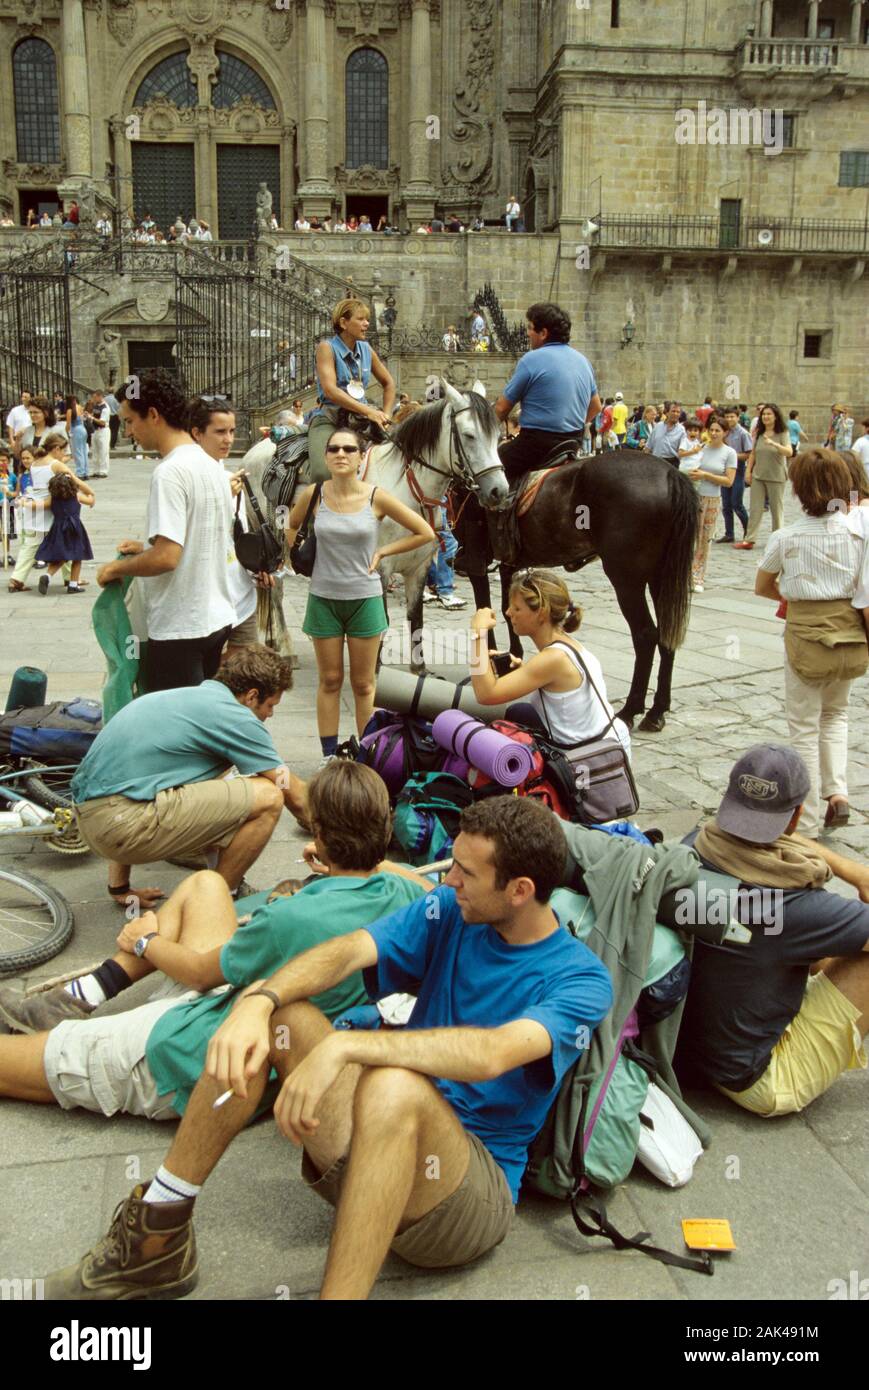 Northern Spain: Santiago de Compostela - Tired pilgrims at the Praza do Obradoiro | usage worldwide Stock Photo